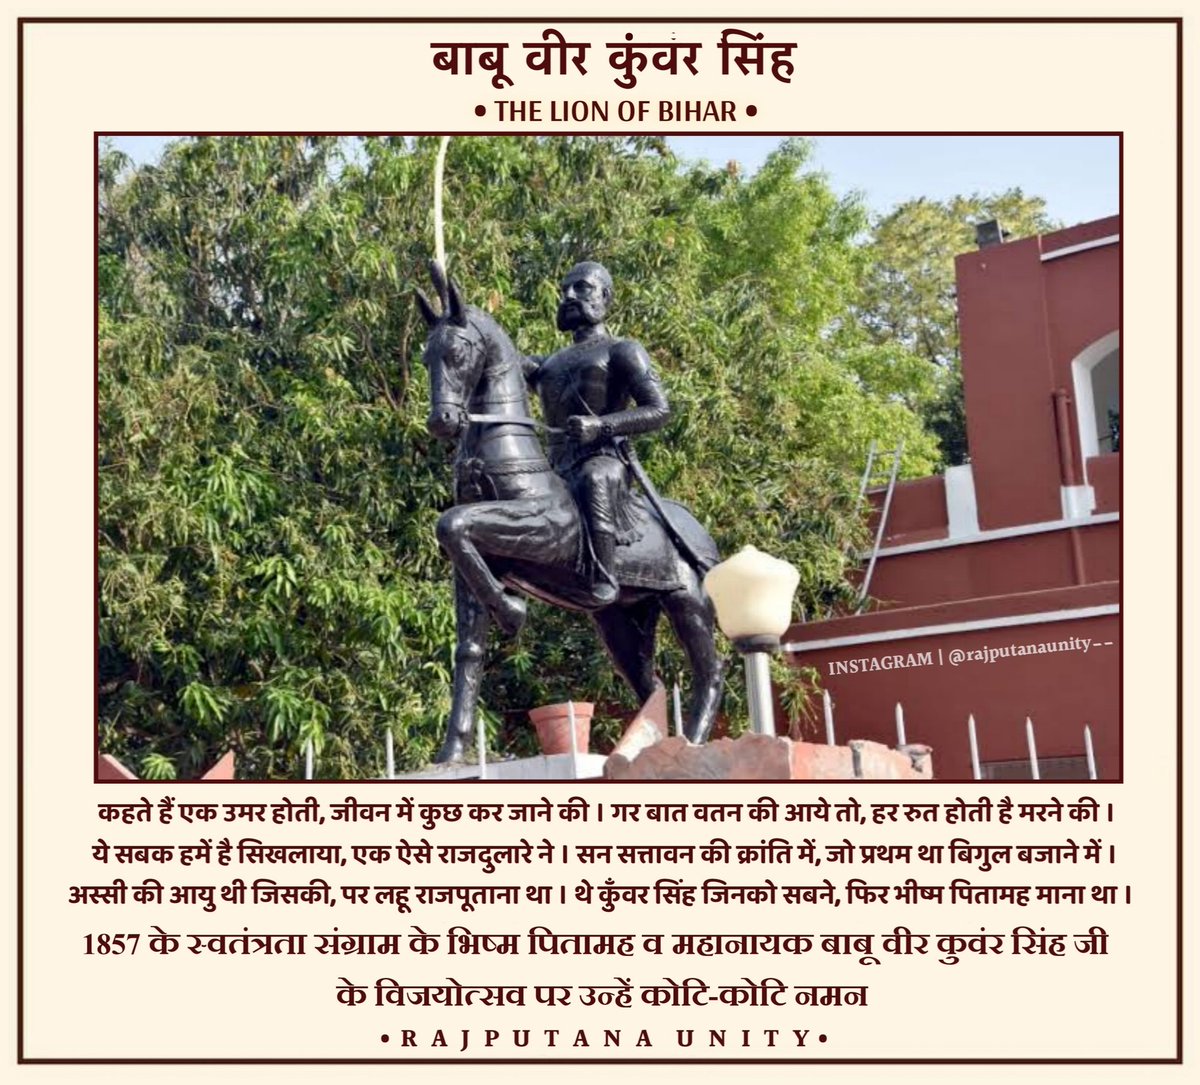 अस्सी की आयु थी जिसकी, पर लहू राजपूताना था 
थे कुंवर सिंह जिनको सबने, फिर भीष्म पितामह माना था।भारत के प्रथम स्वतंत्रता संग्राम 1857 के भीष्म पितामह व महानायक, शौर्य एवं वीरता के प्रतीक बाबू वीर कुंवर सिंह जी के विजयोत्सव पर उन्हें कोटि कोटि नमन ।#VeerKunwarSingh